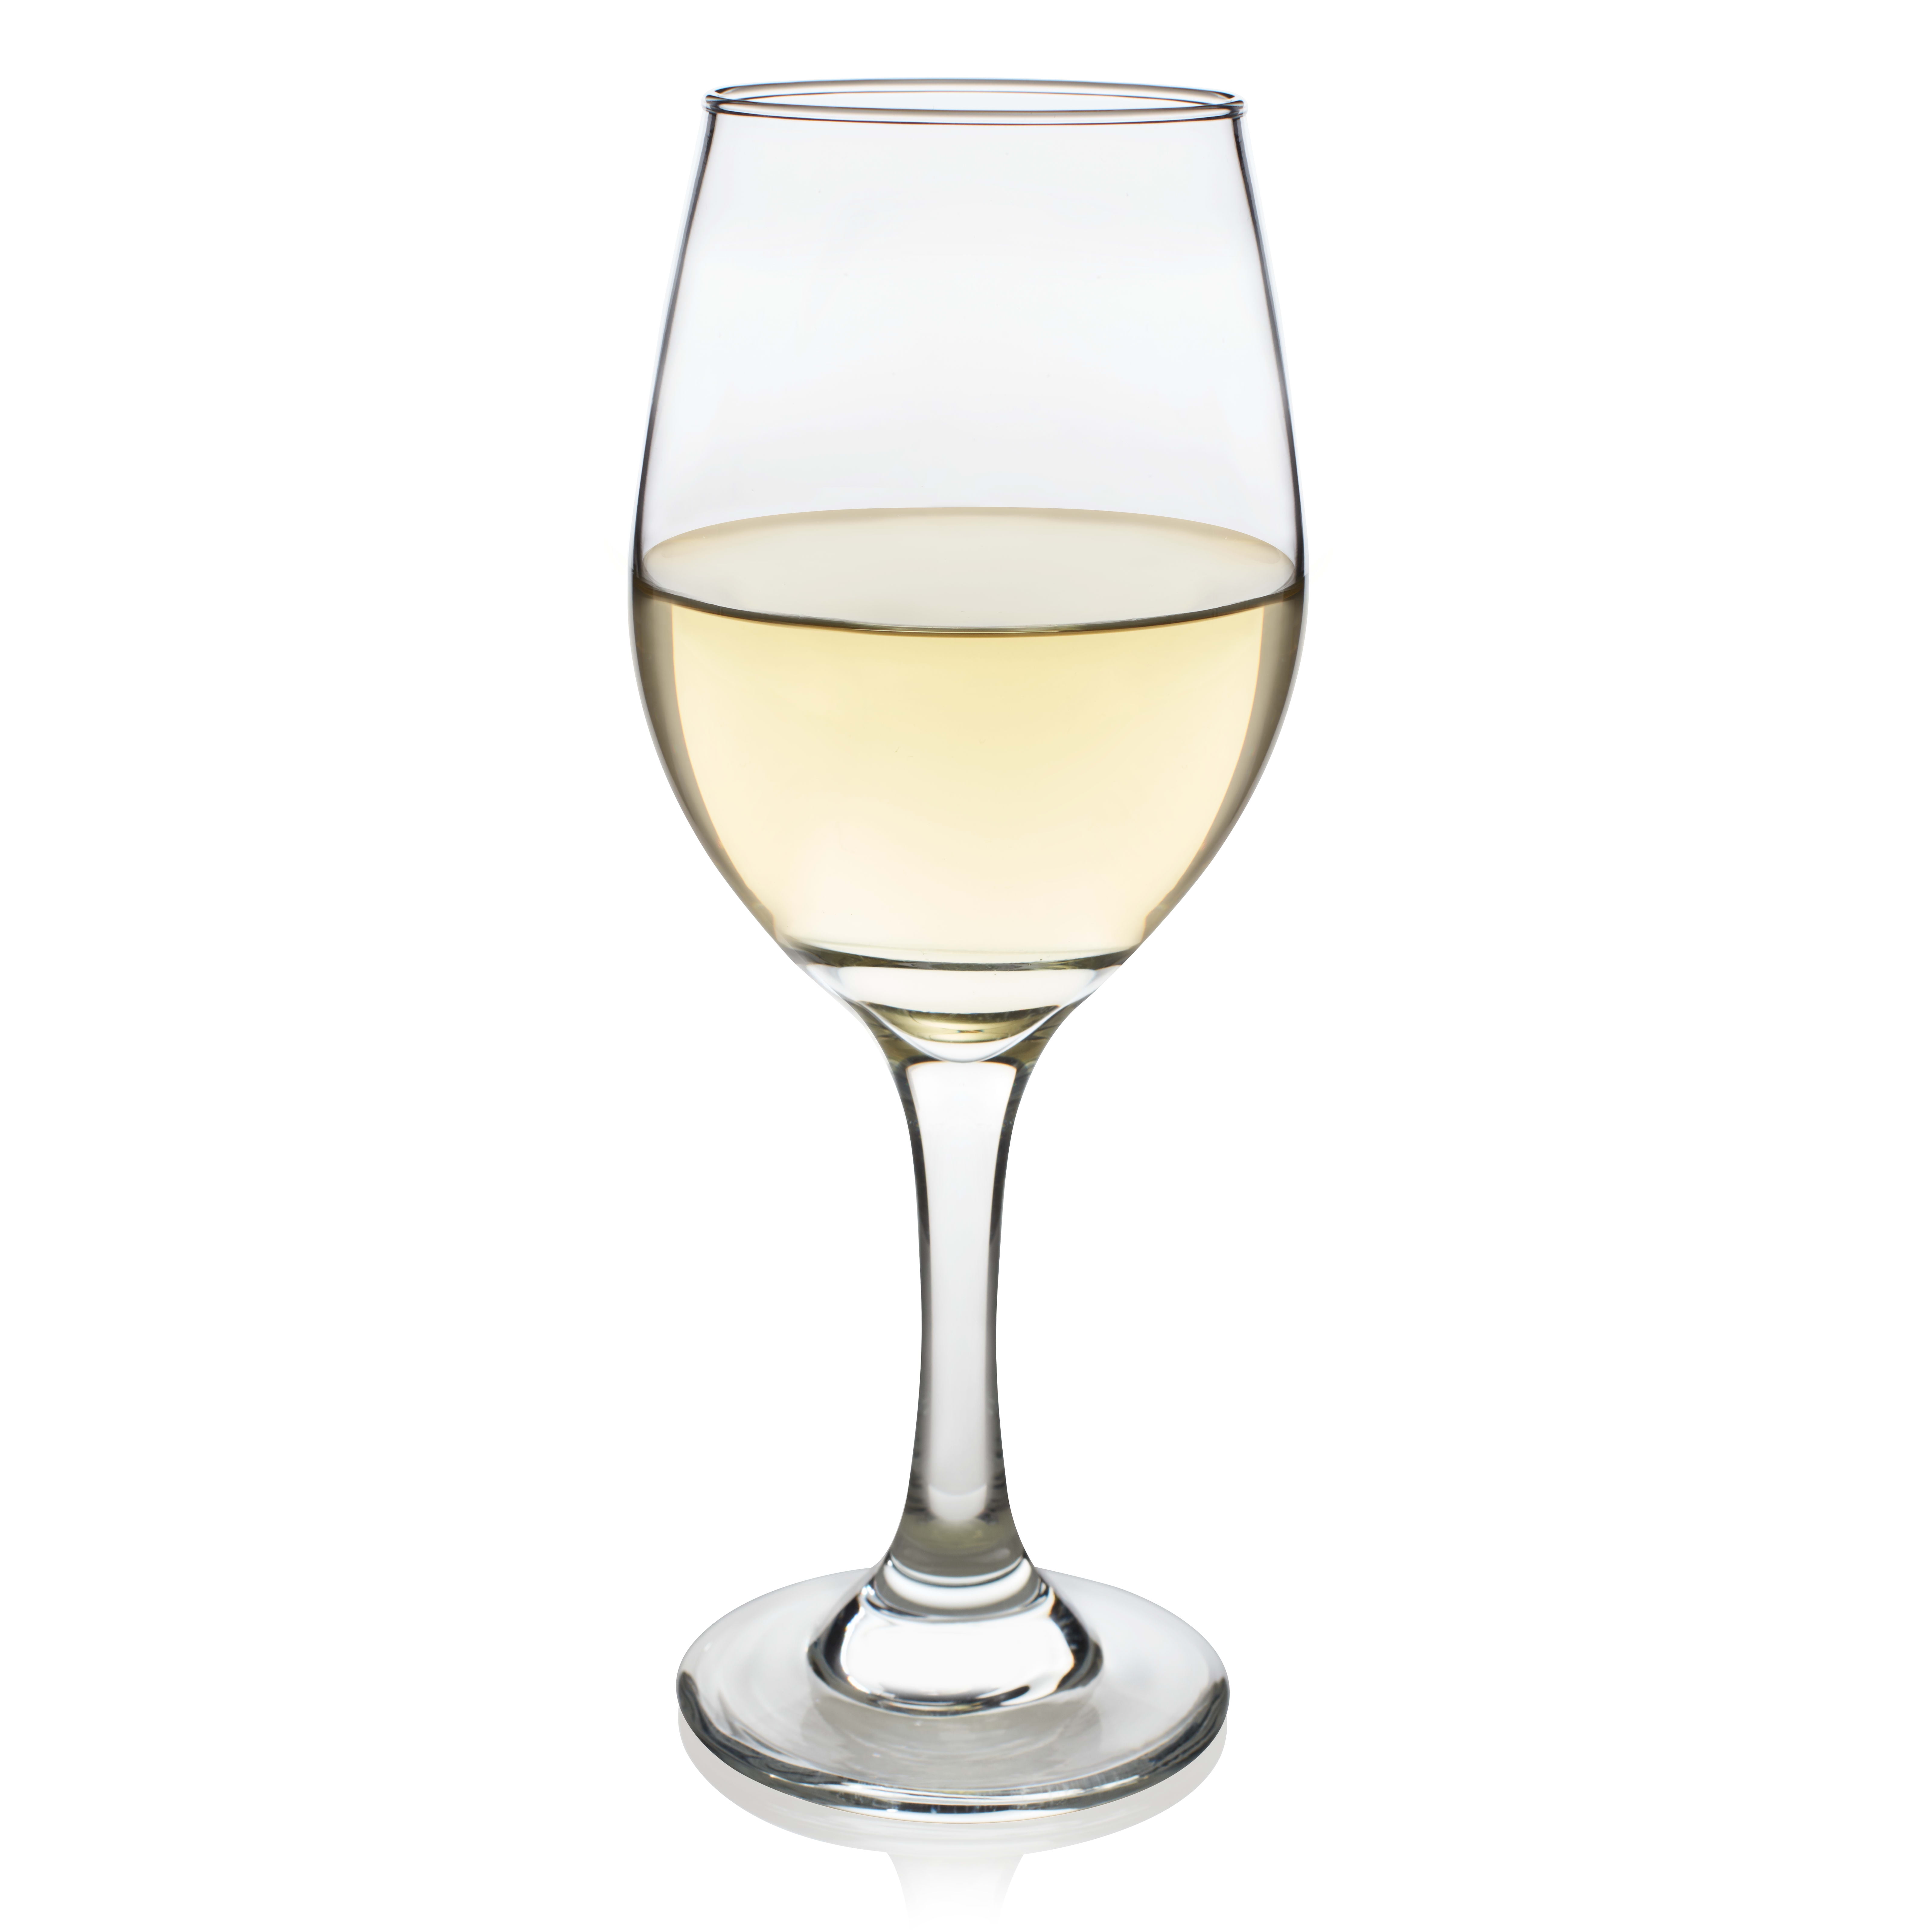 Libbey Basics White Wine Glasses 11 Ounce Set Of 4